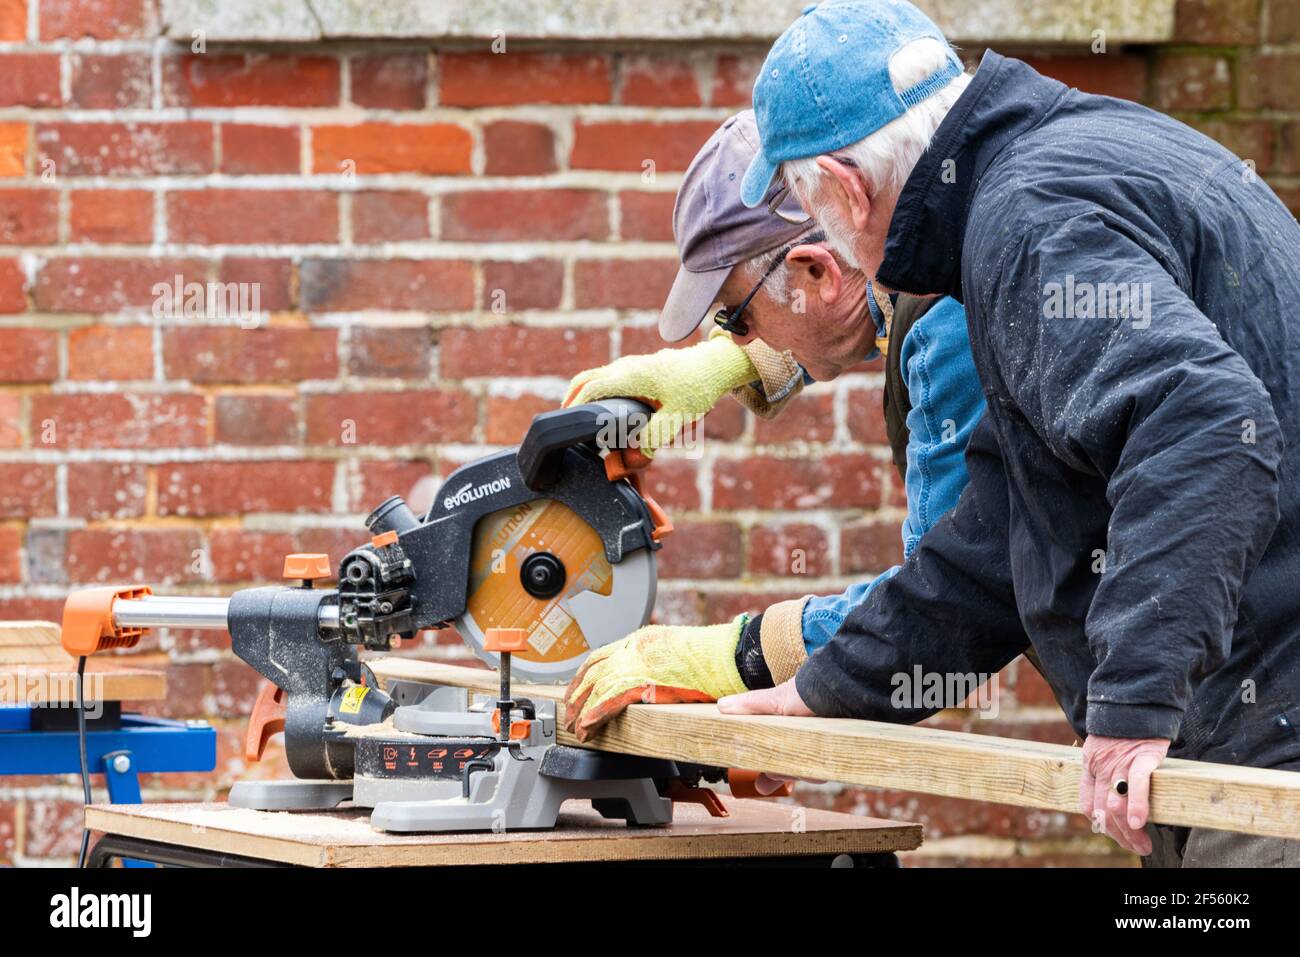 Trabajadores de madera y carpinteros mayores, dos hombres mayores cortando madera con una sierra circular, Alresford, Hampshire, Reino Unido Foto de stock